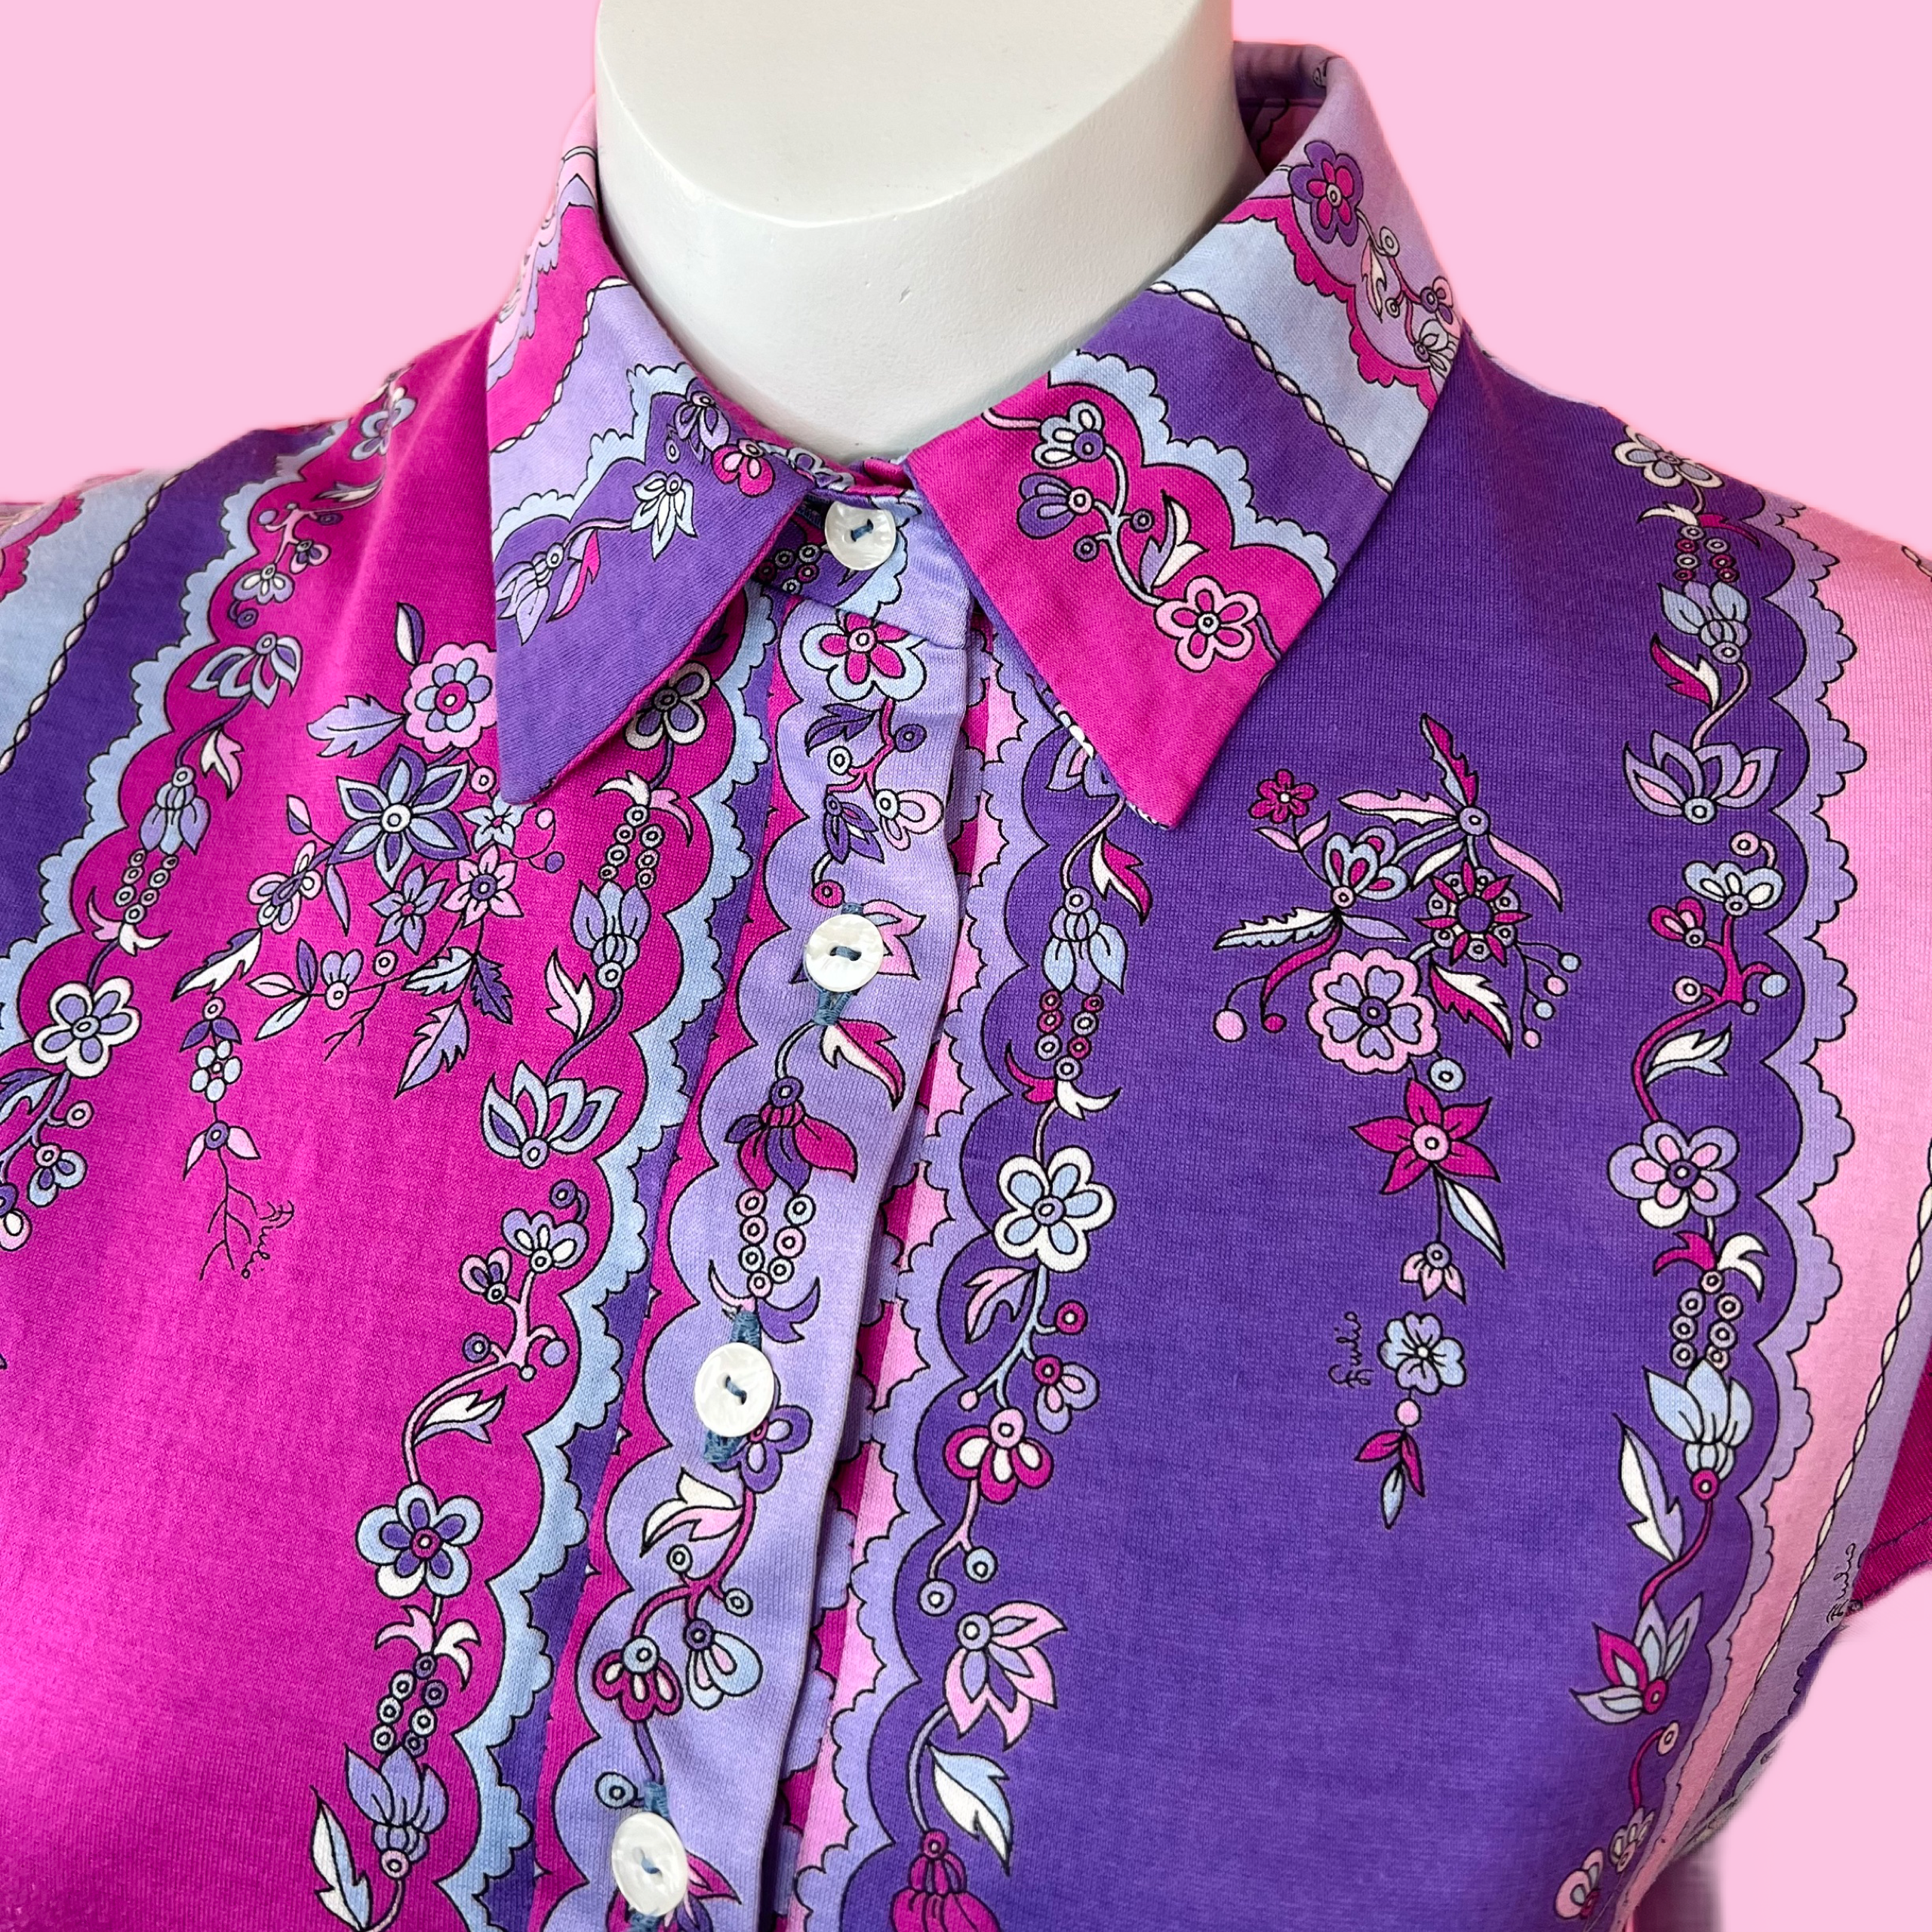 Empress Vintage Emilio Pucci Pink & Purple Floral Print Dress